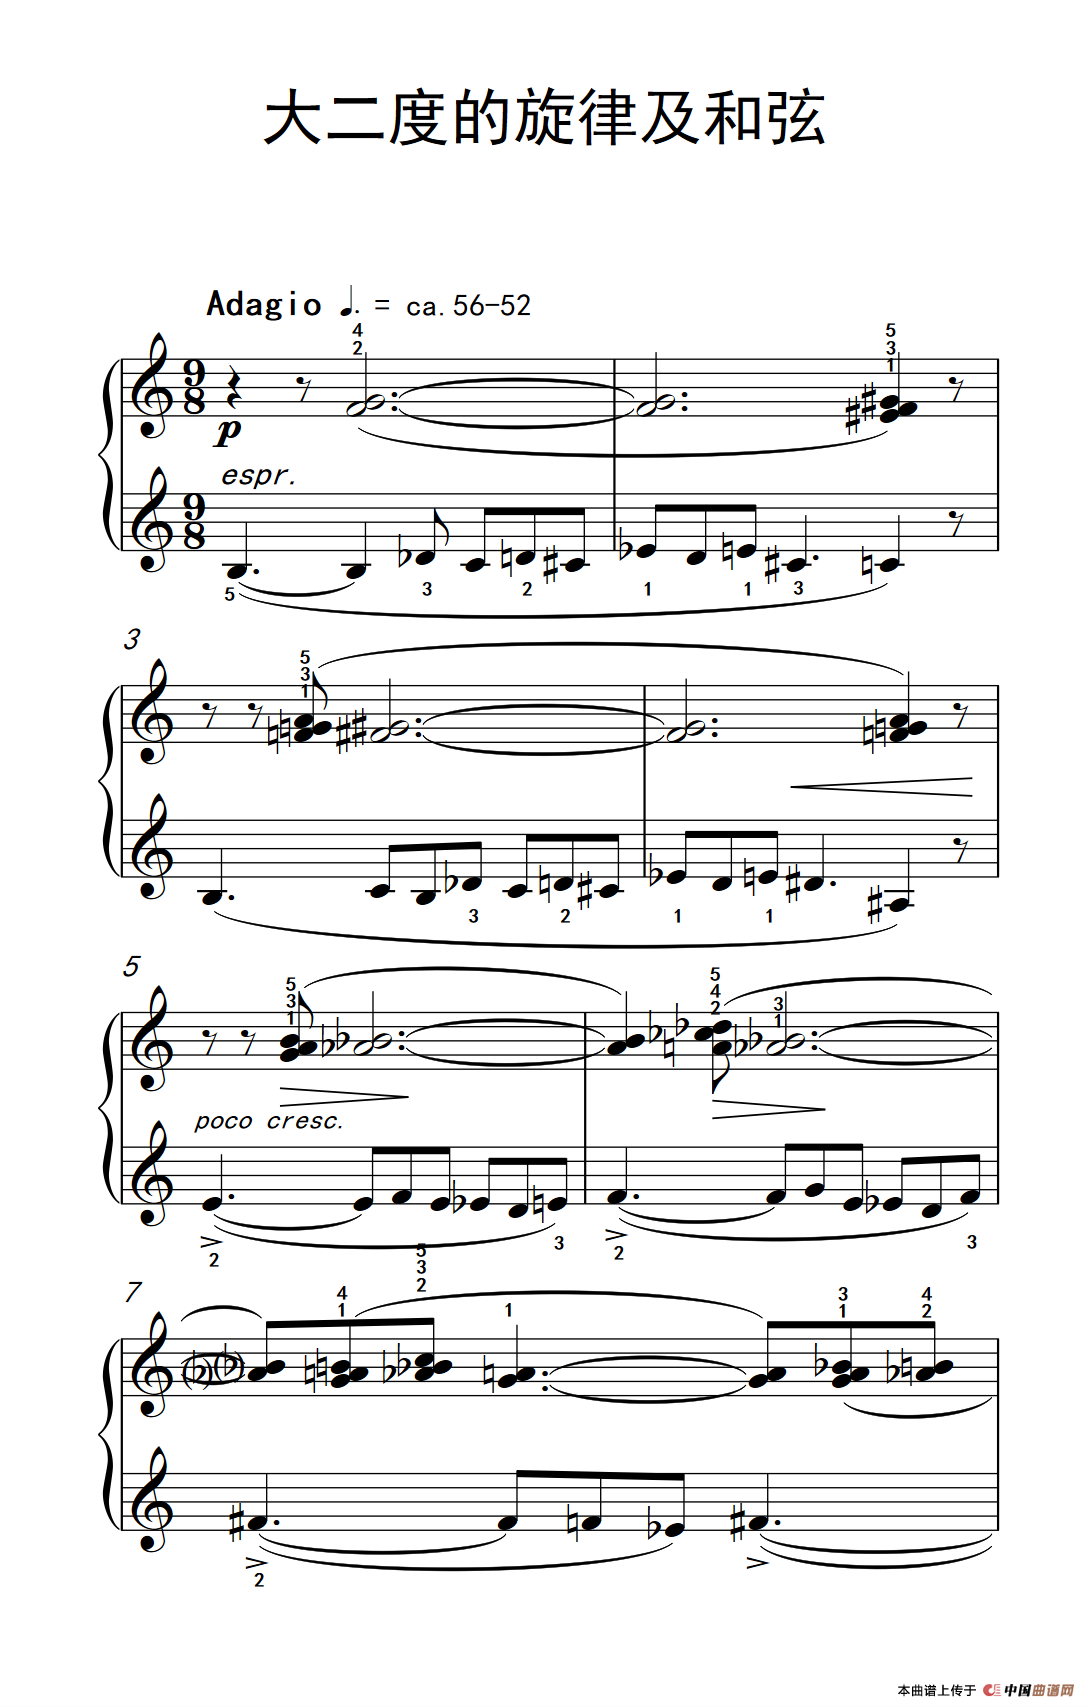 《大二度的旋律及和弦》钢琴曲谱图分享